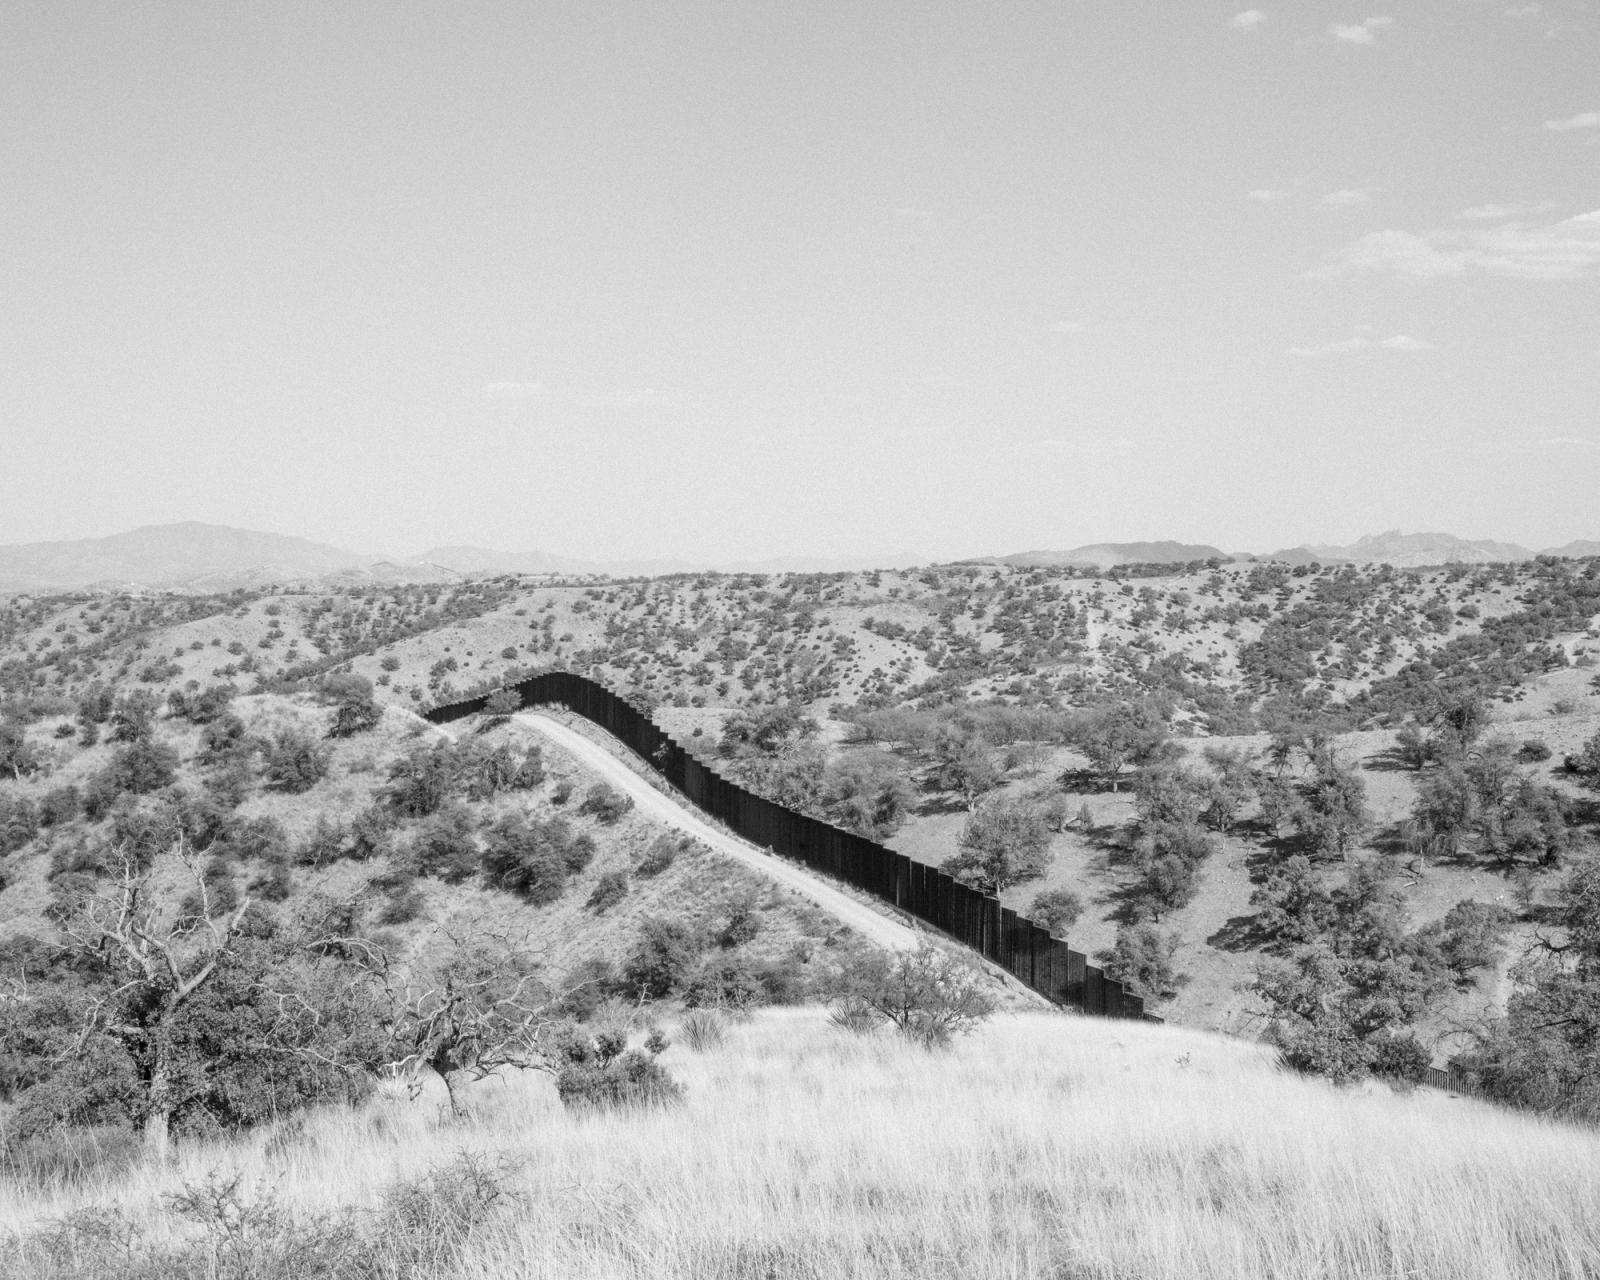 The wall dividing the US and Me...ar Nogales. Arizona. May, 2017.